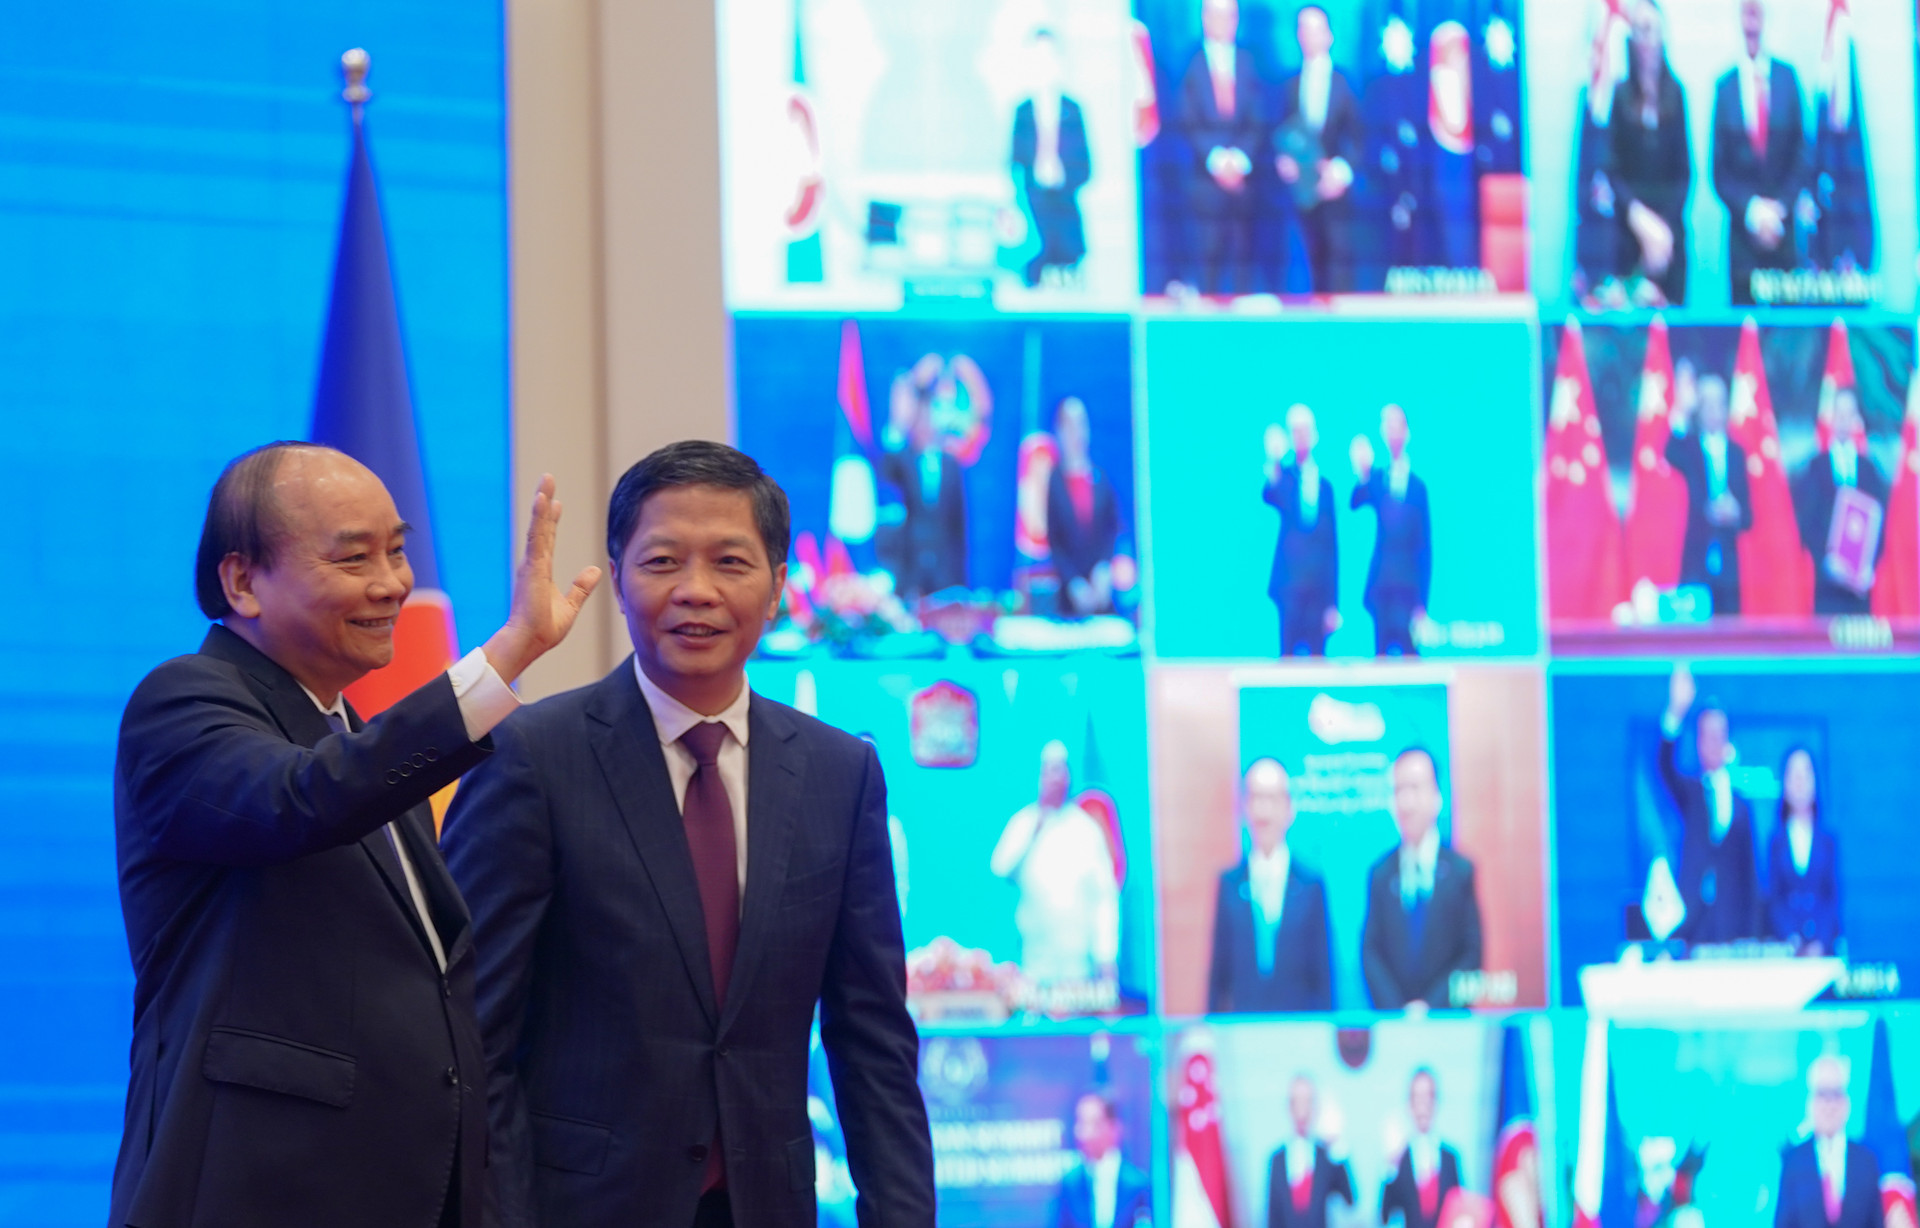 Thủ tướng Chính phủ Nguyễn Xuân Phúc-Chủ tịch ASEAN 2020 và các nhà lãnh đạo ASEAN-lãnh đạo 5 nước đối tác cùng chứng kiến sự kiện quan trọng này tại các đầu cầu.